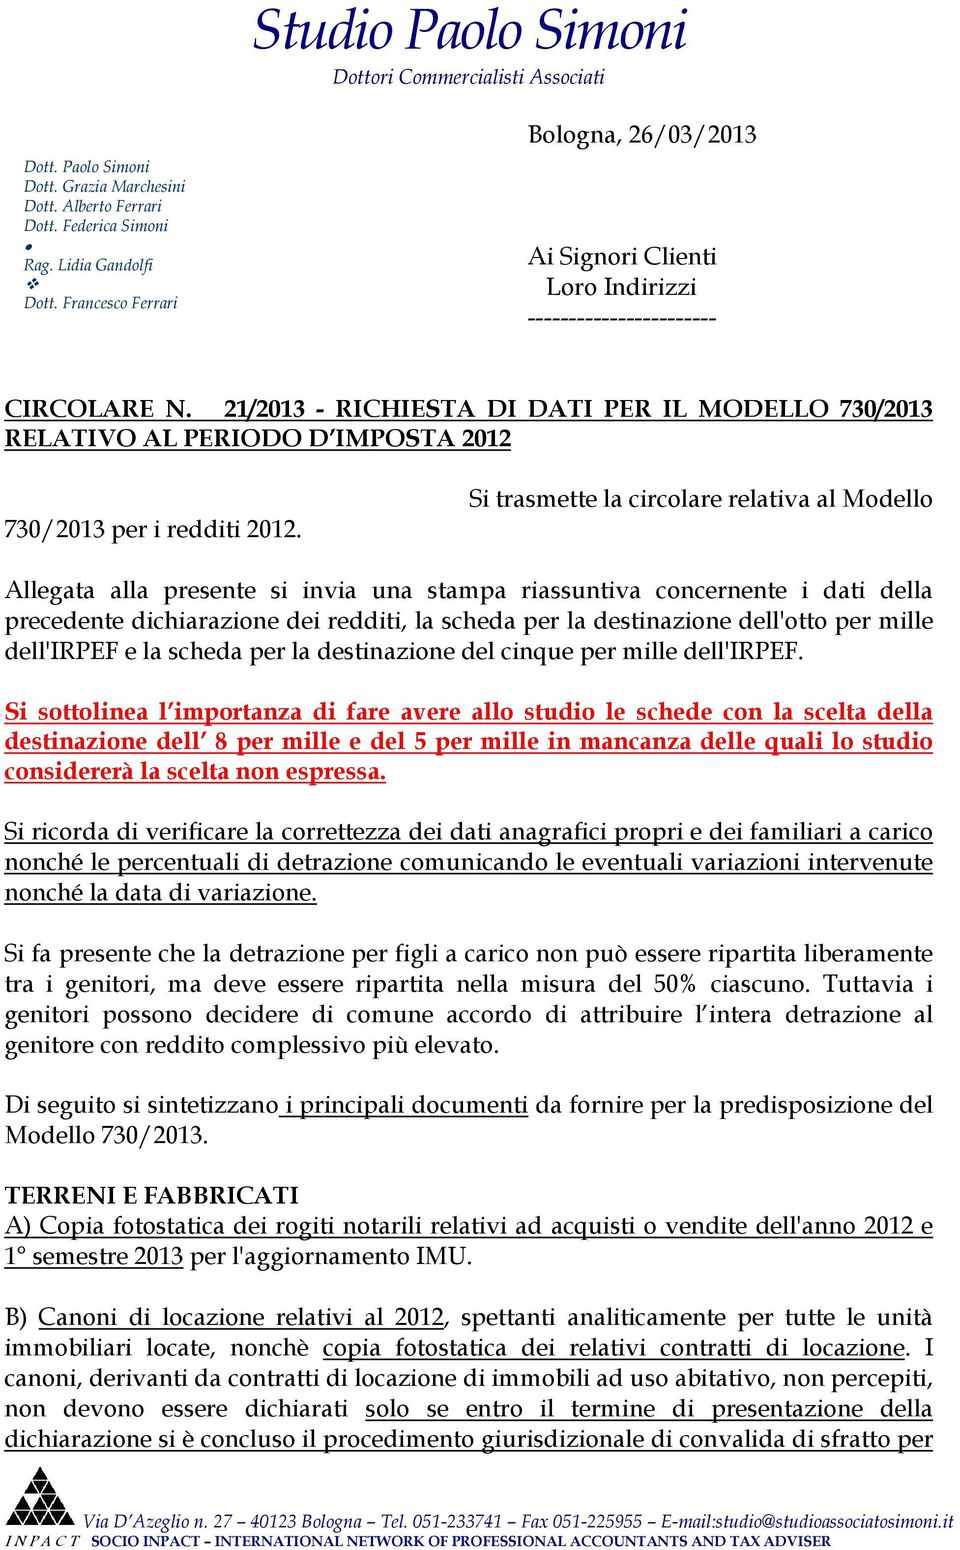 21/2013 - RICHIESTA DI DATI PER IL MODELLO 730/2013 RELATIVO AL PERIODO D IMPOSTA 2012 730/2013 per i redditi 2012.